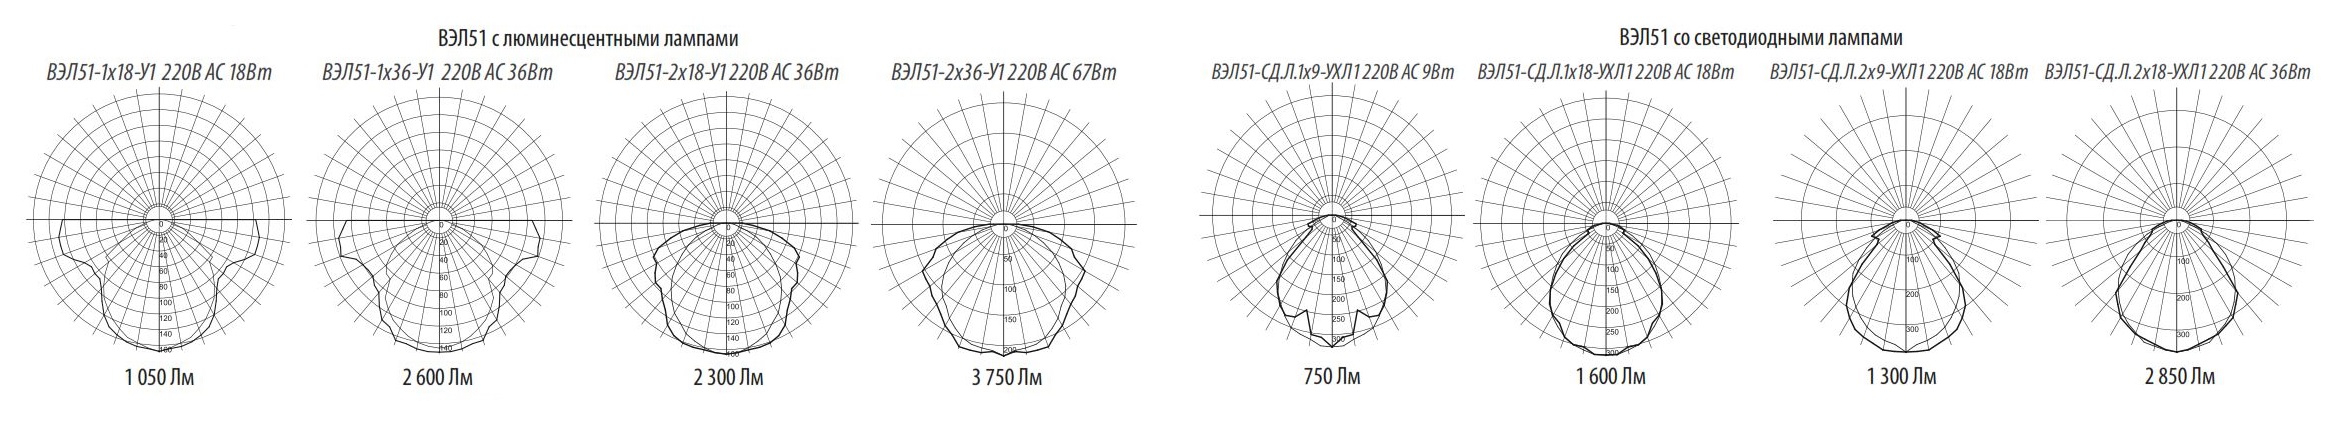 Фотометрическая схема для светильников ВЭЛ 51